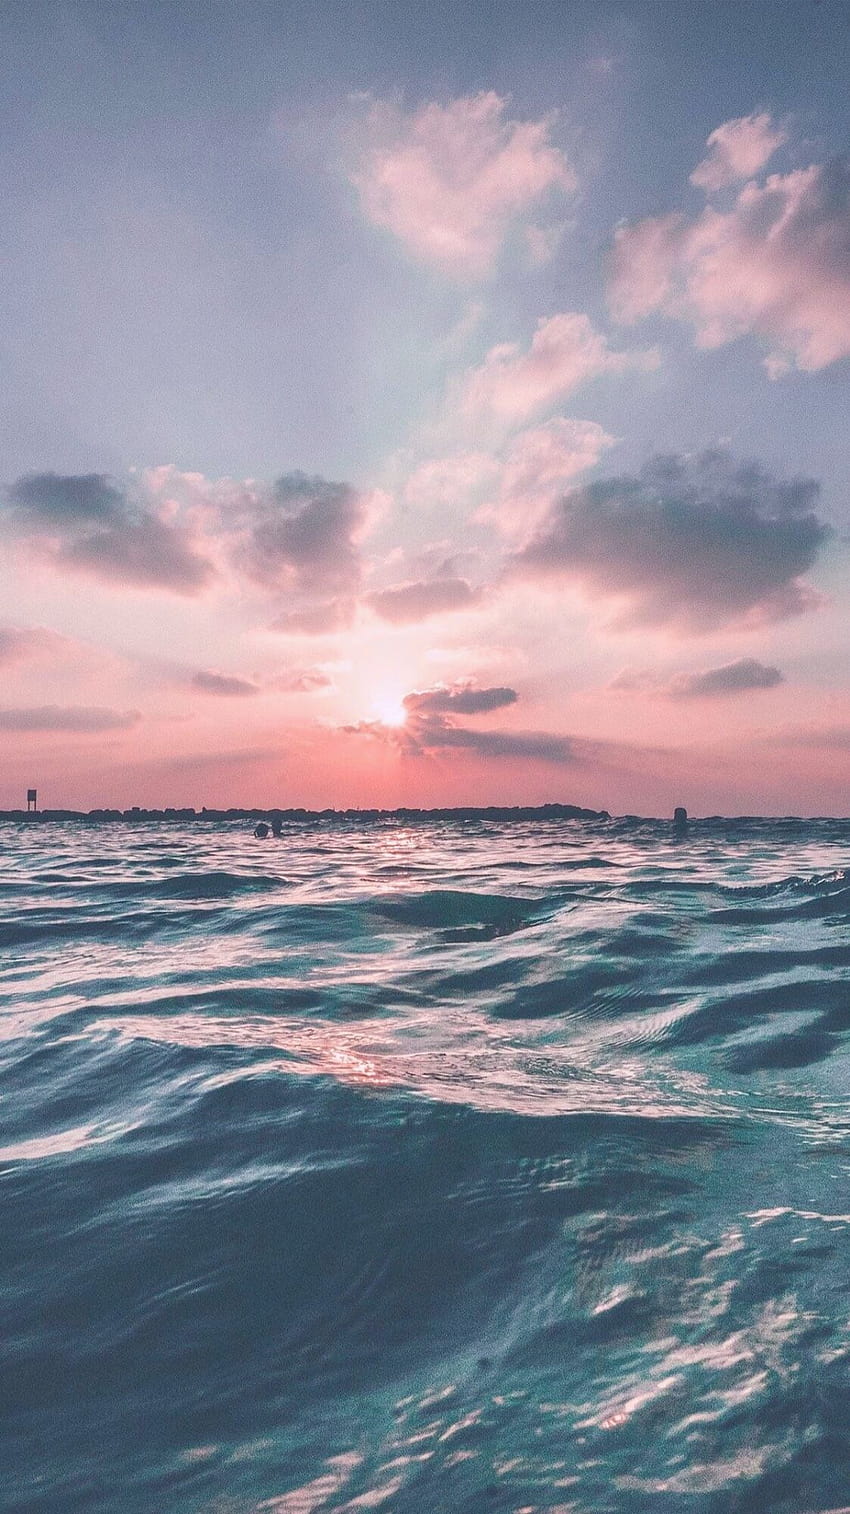 Hãy đắm mình vào vẻ đẹp tuyệt đỉnh của đại dương với những hình ảnh Tumblr Aesthetic đầy thần thái. Tận hưởng cảm giác thư giãn và yên bình như khi trôi trên nước mặt đại dương rộng lớn.